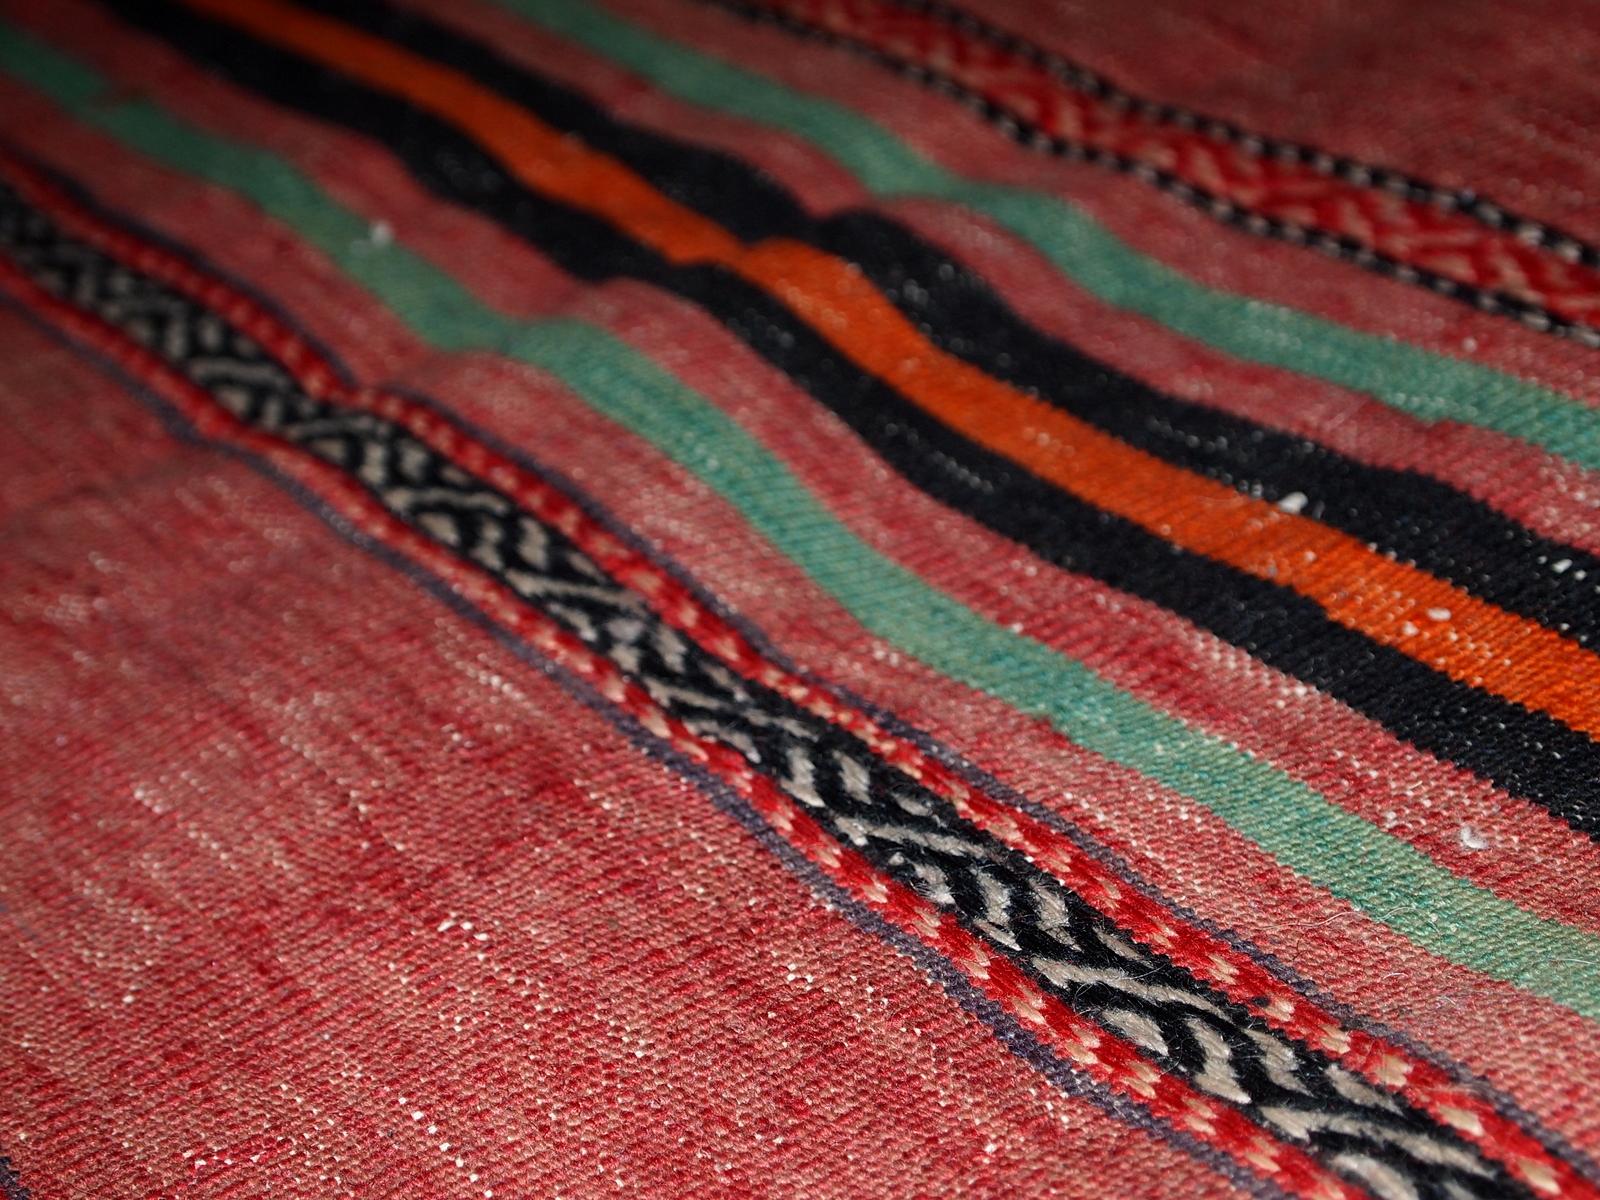 Handgefertigter persischer Kelim im roten Farbton mit Streifen. Dieser Kelim ist im Originalzustand, hat einige Altersspuren.

-Zustand: original, leichte Altersspuren,

-CIRCA: 1940er Jahre,

-Größe: 4,5' x 9,4' (139cm x 288cm),

-MATERIAL: